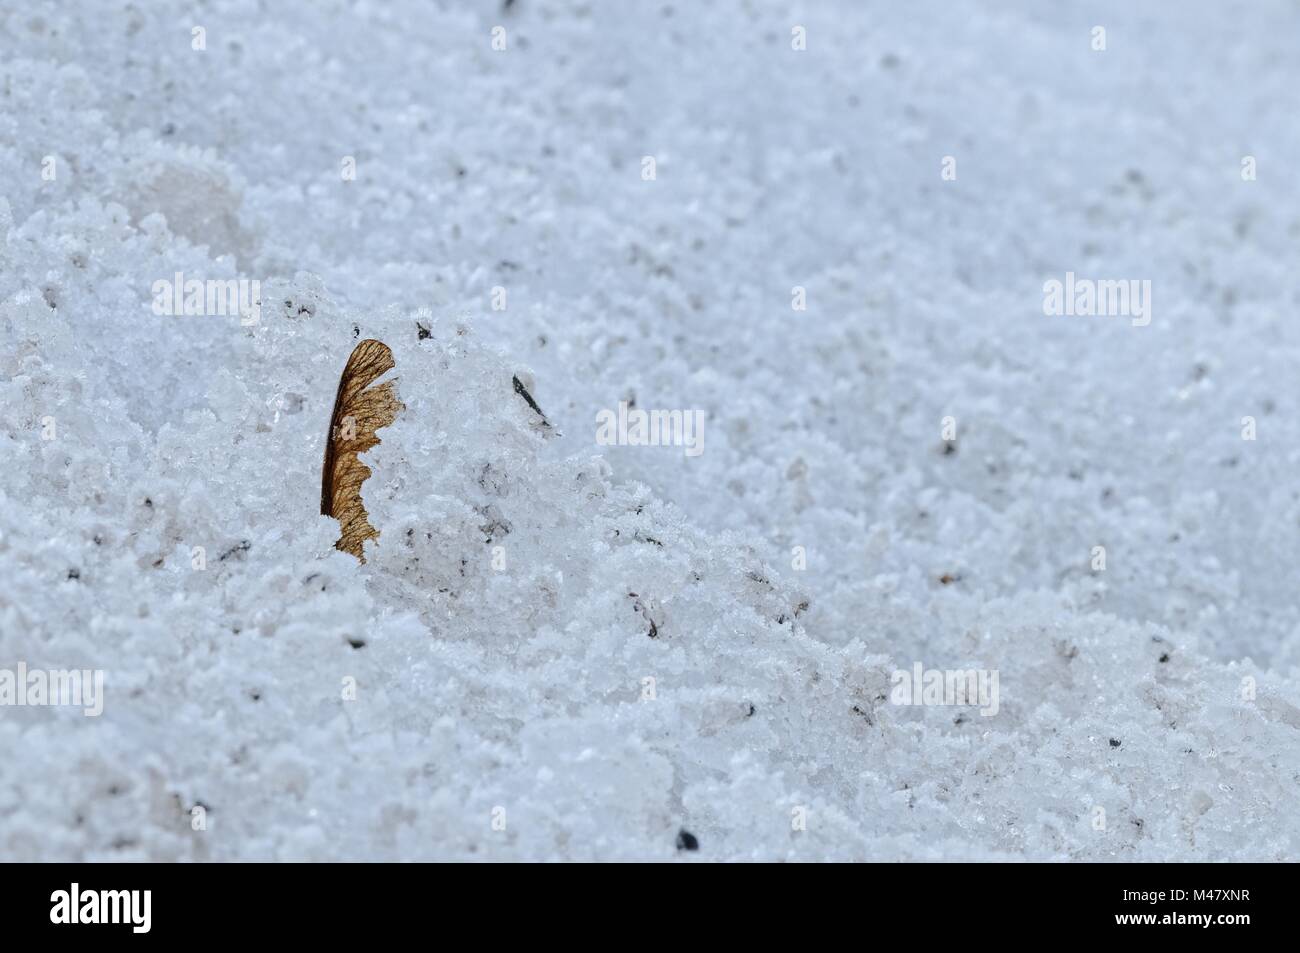 Frutto alato di acero semi nel deserto di neve Foto Stock